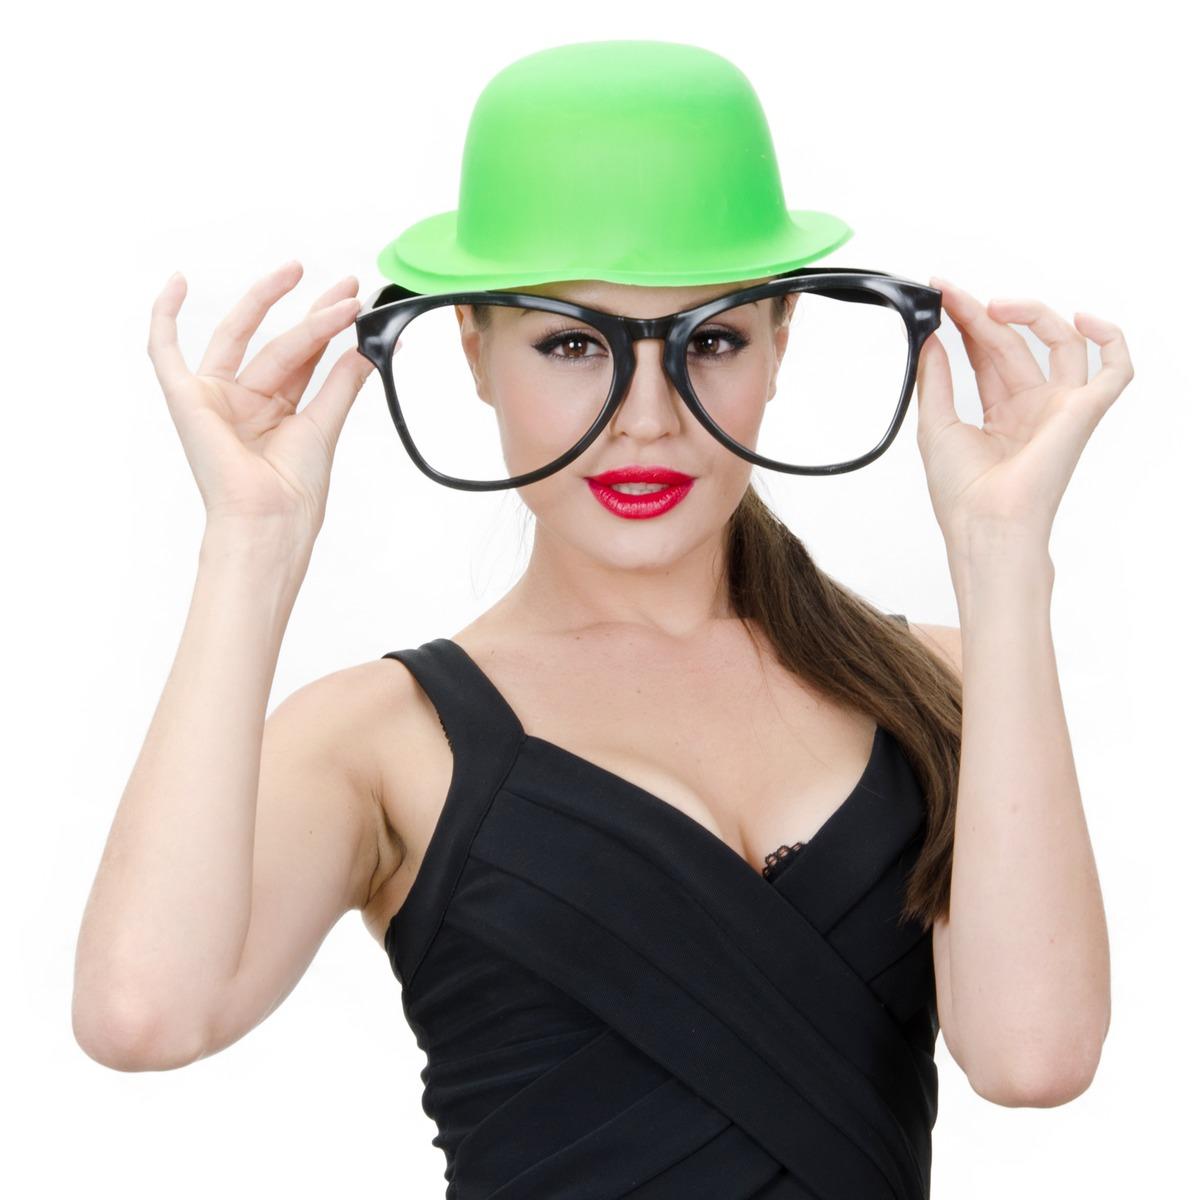 Chapeau fluo + lunettes géantes - Taille unique - Différents coloris